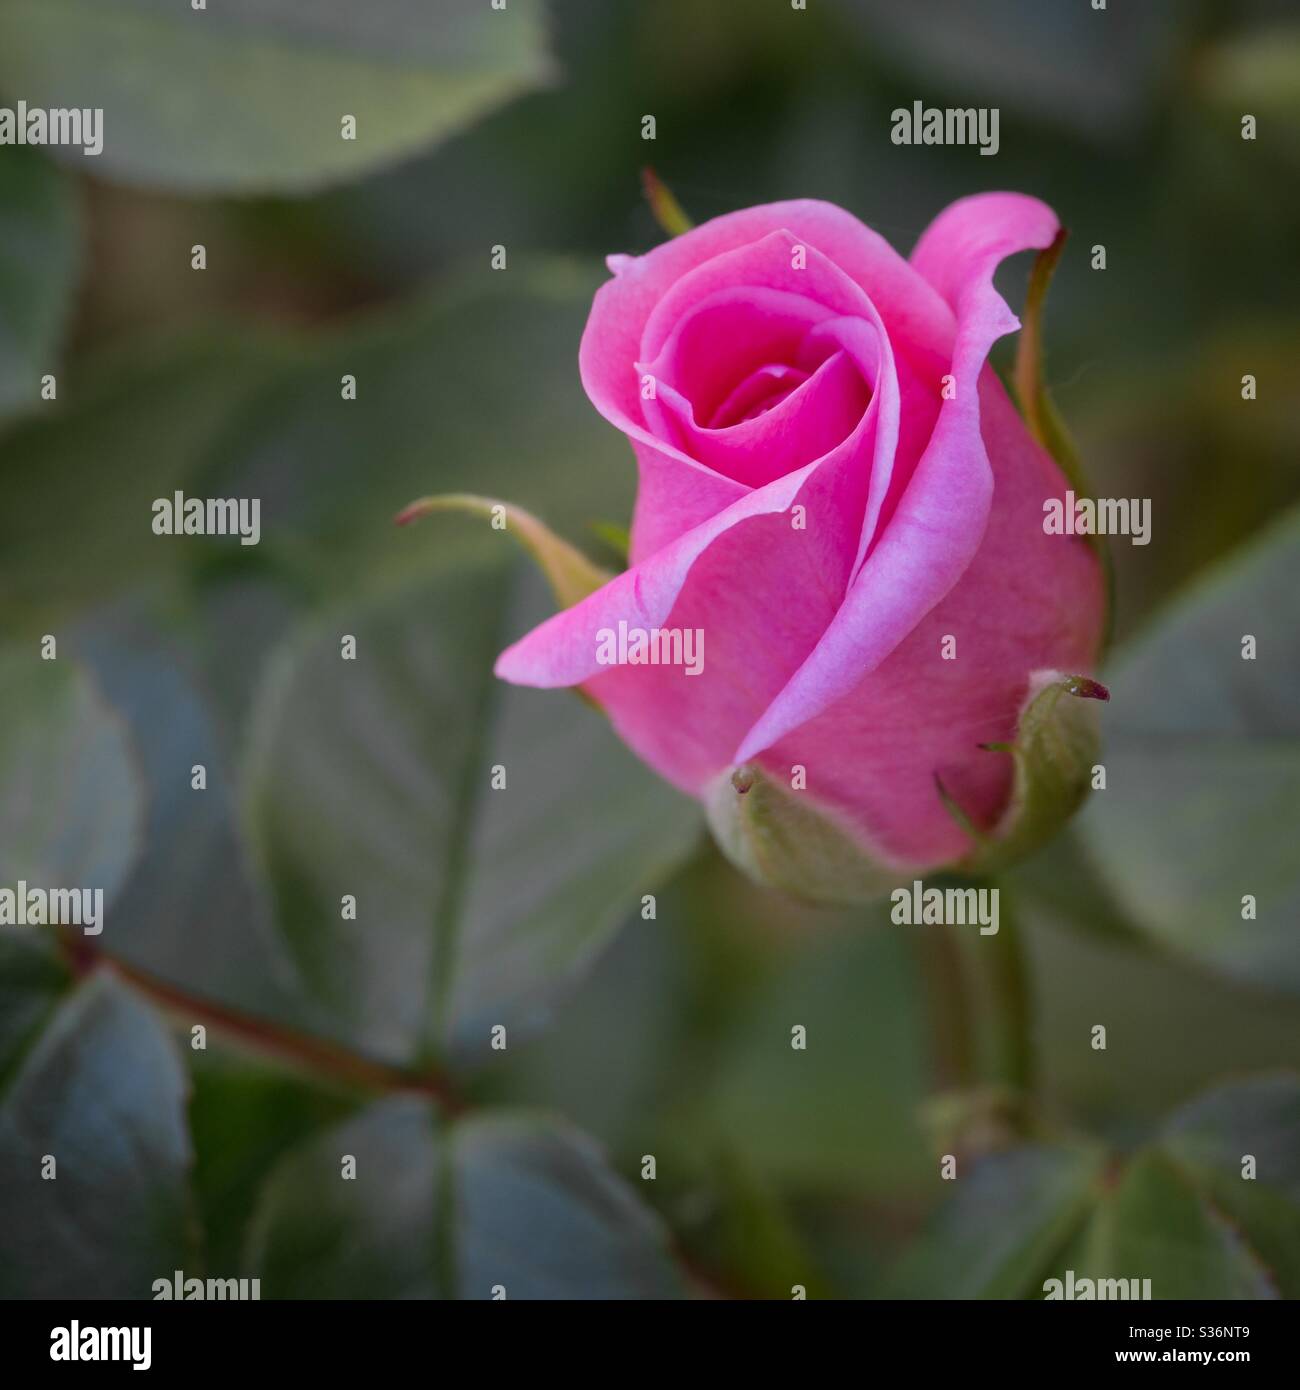 Un gros plan d'une rose ou d'un rosebud rose délicat entouré de feuilles vertes Banque D'Images